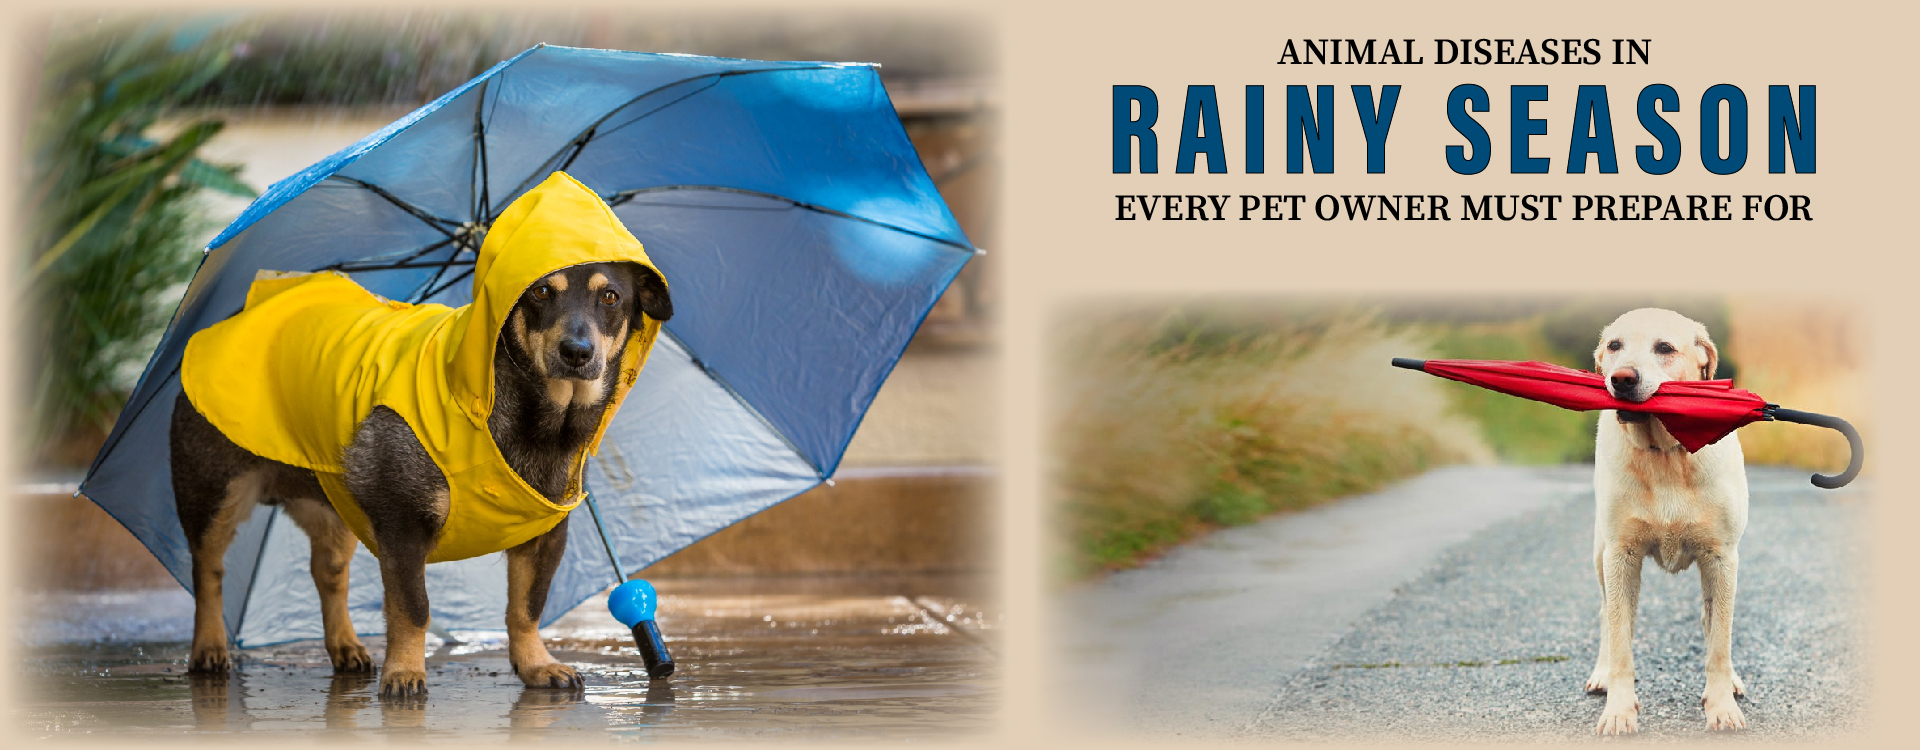 Rainy Season For Pets